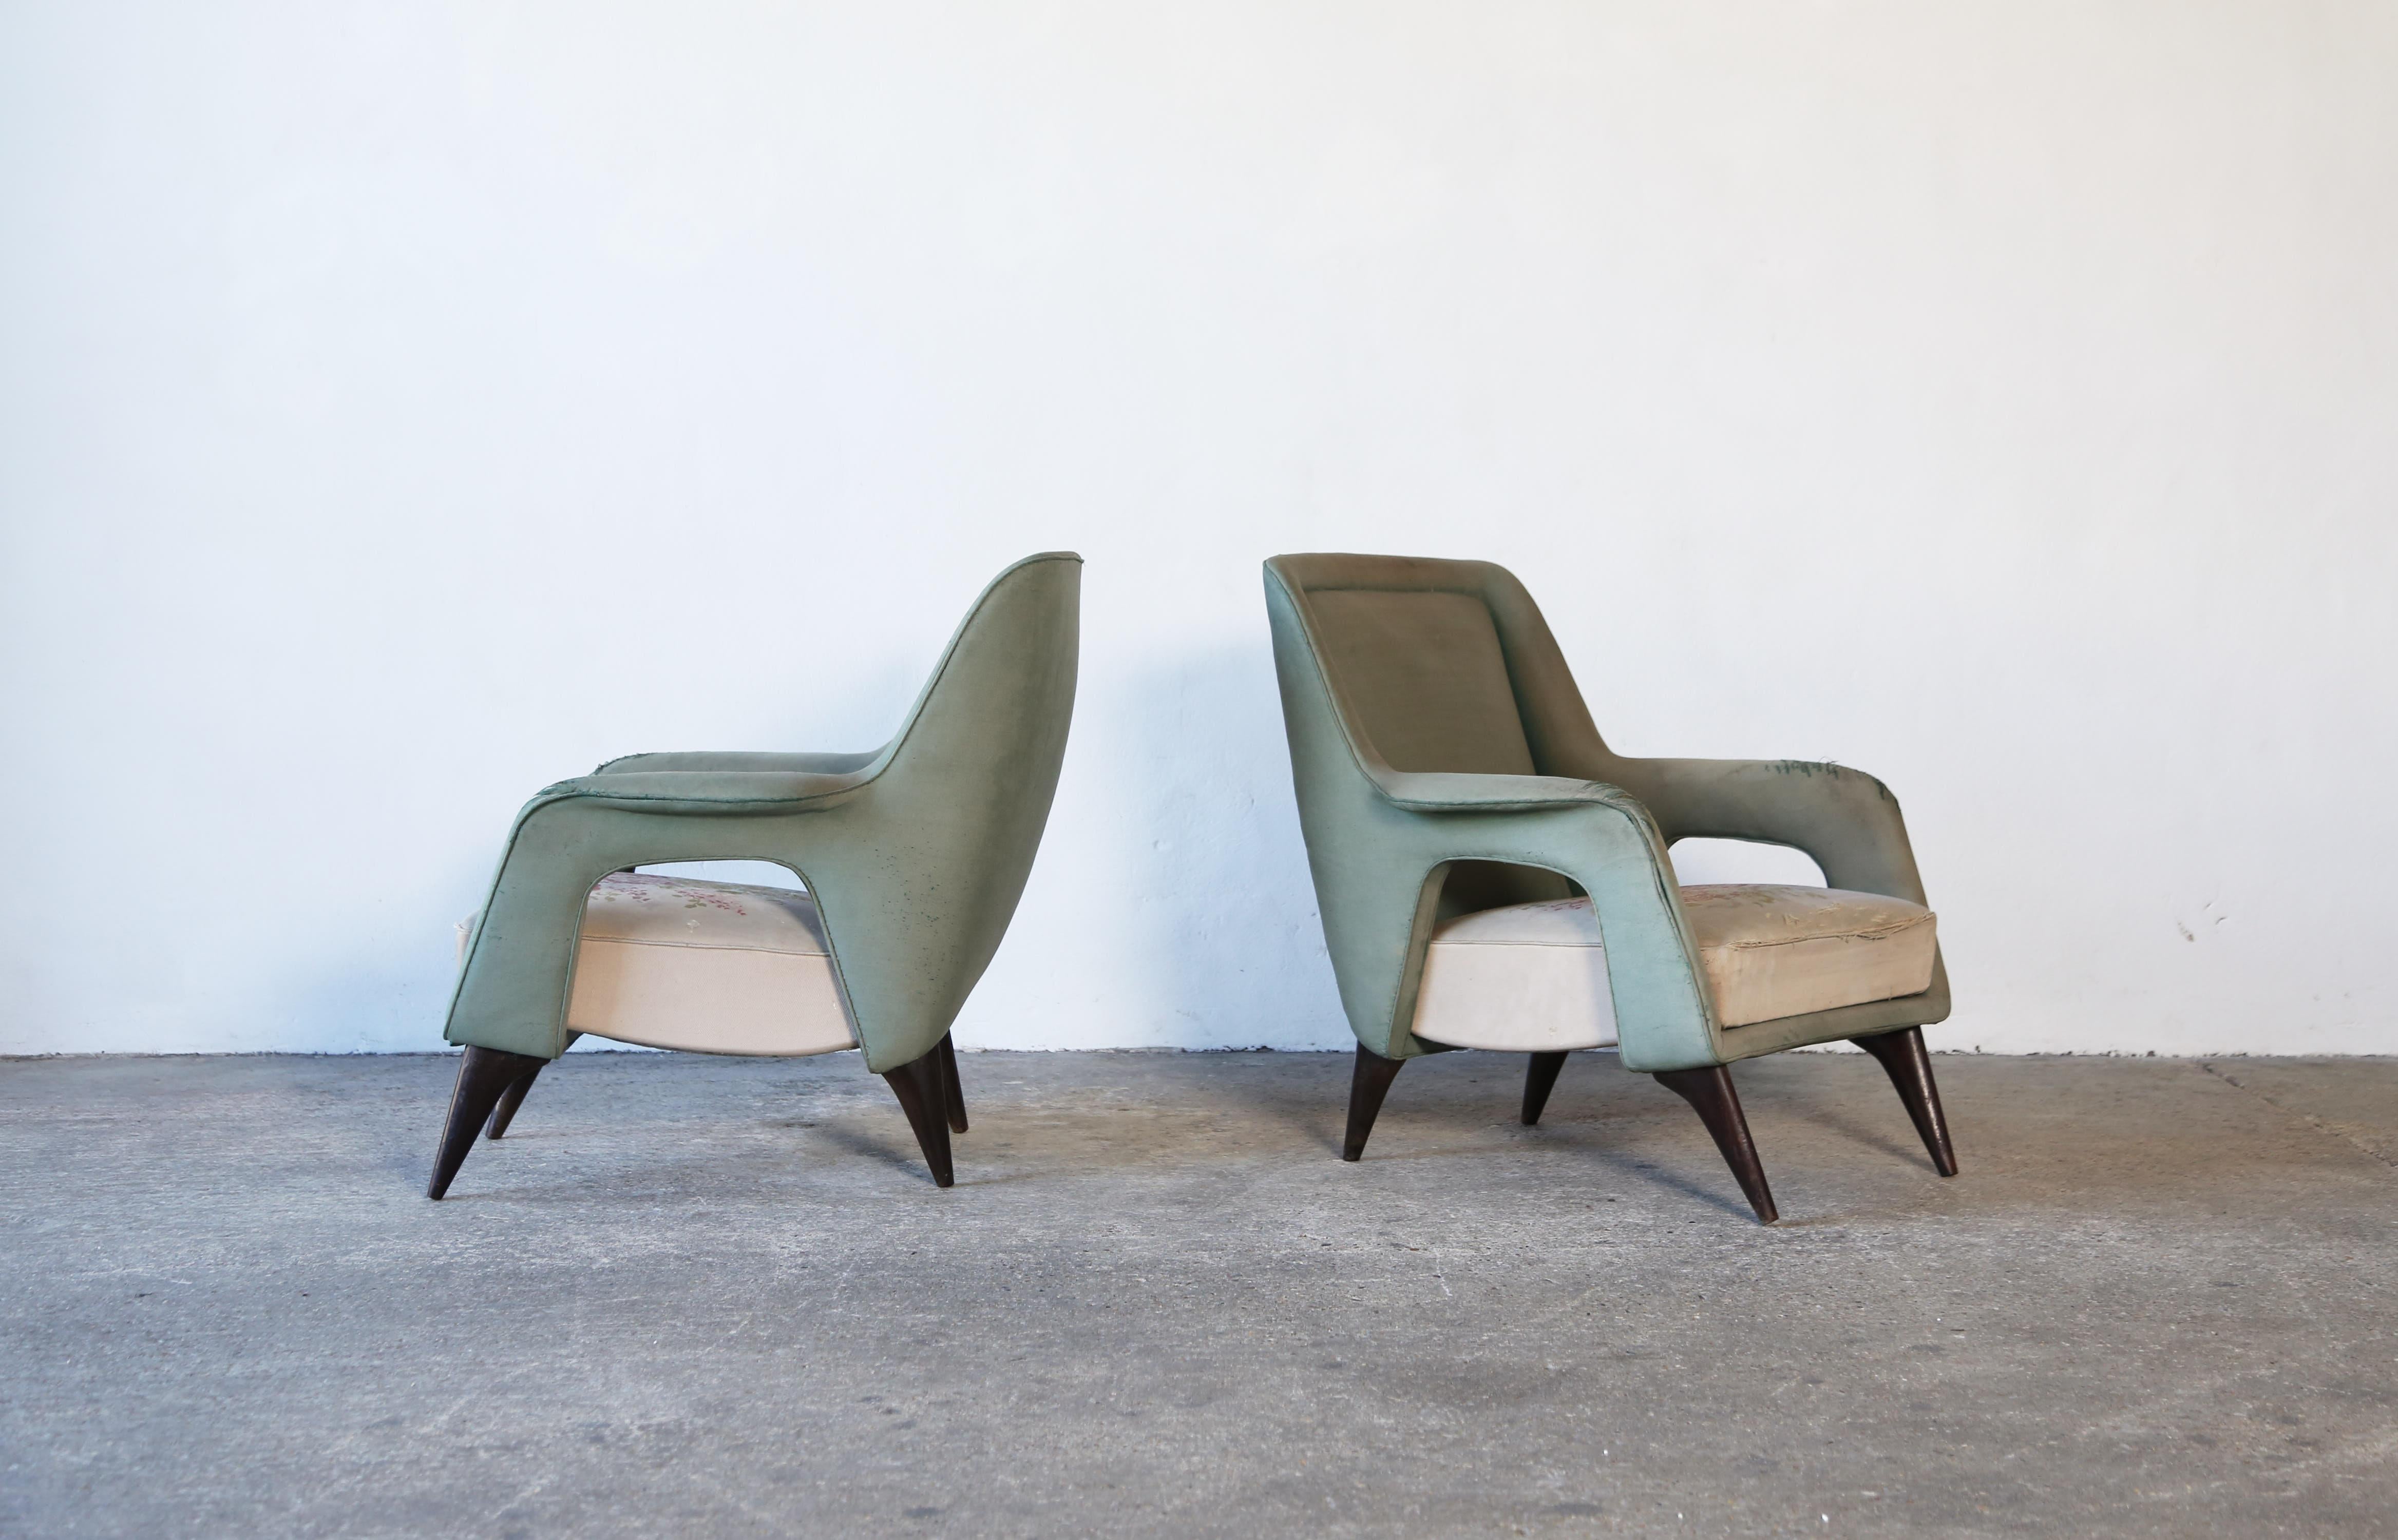 Une extraordinaire et rare paire de fauteuils italiens des années 1950.  La structure est saine, mais la tapisserie d'origine est usée. Les chaises sont donc vendues pour que le client puisse les recouvrir du tissu de son choix.  Expédition rapide